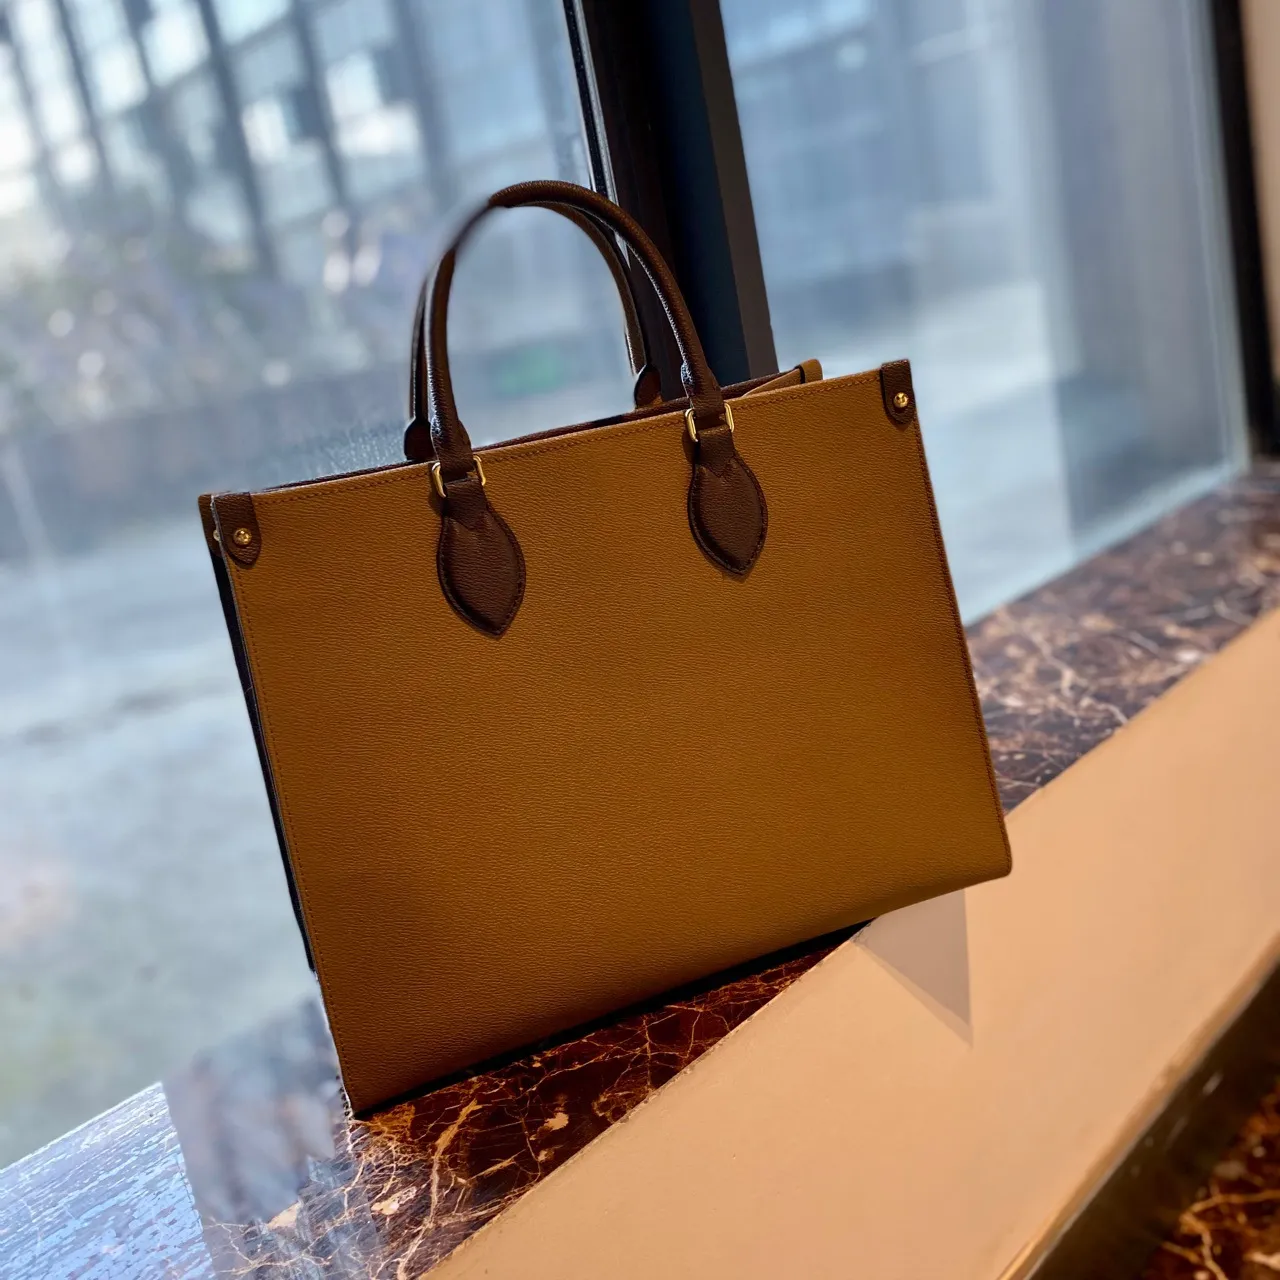 AAA M45321 Mode onthego Designer-Tasche Louiseitys Luxus-Umhängetasche Tragetaschen für Damen Handtaschen schwarz/beige Dinner-Tasche Designer-Handtasche Handtasche mit großem Fassungsvermögen